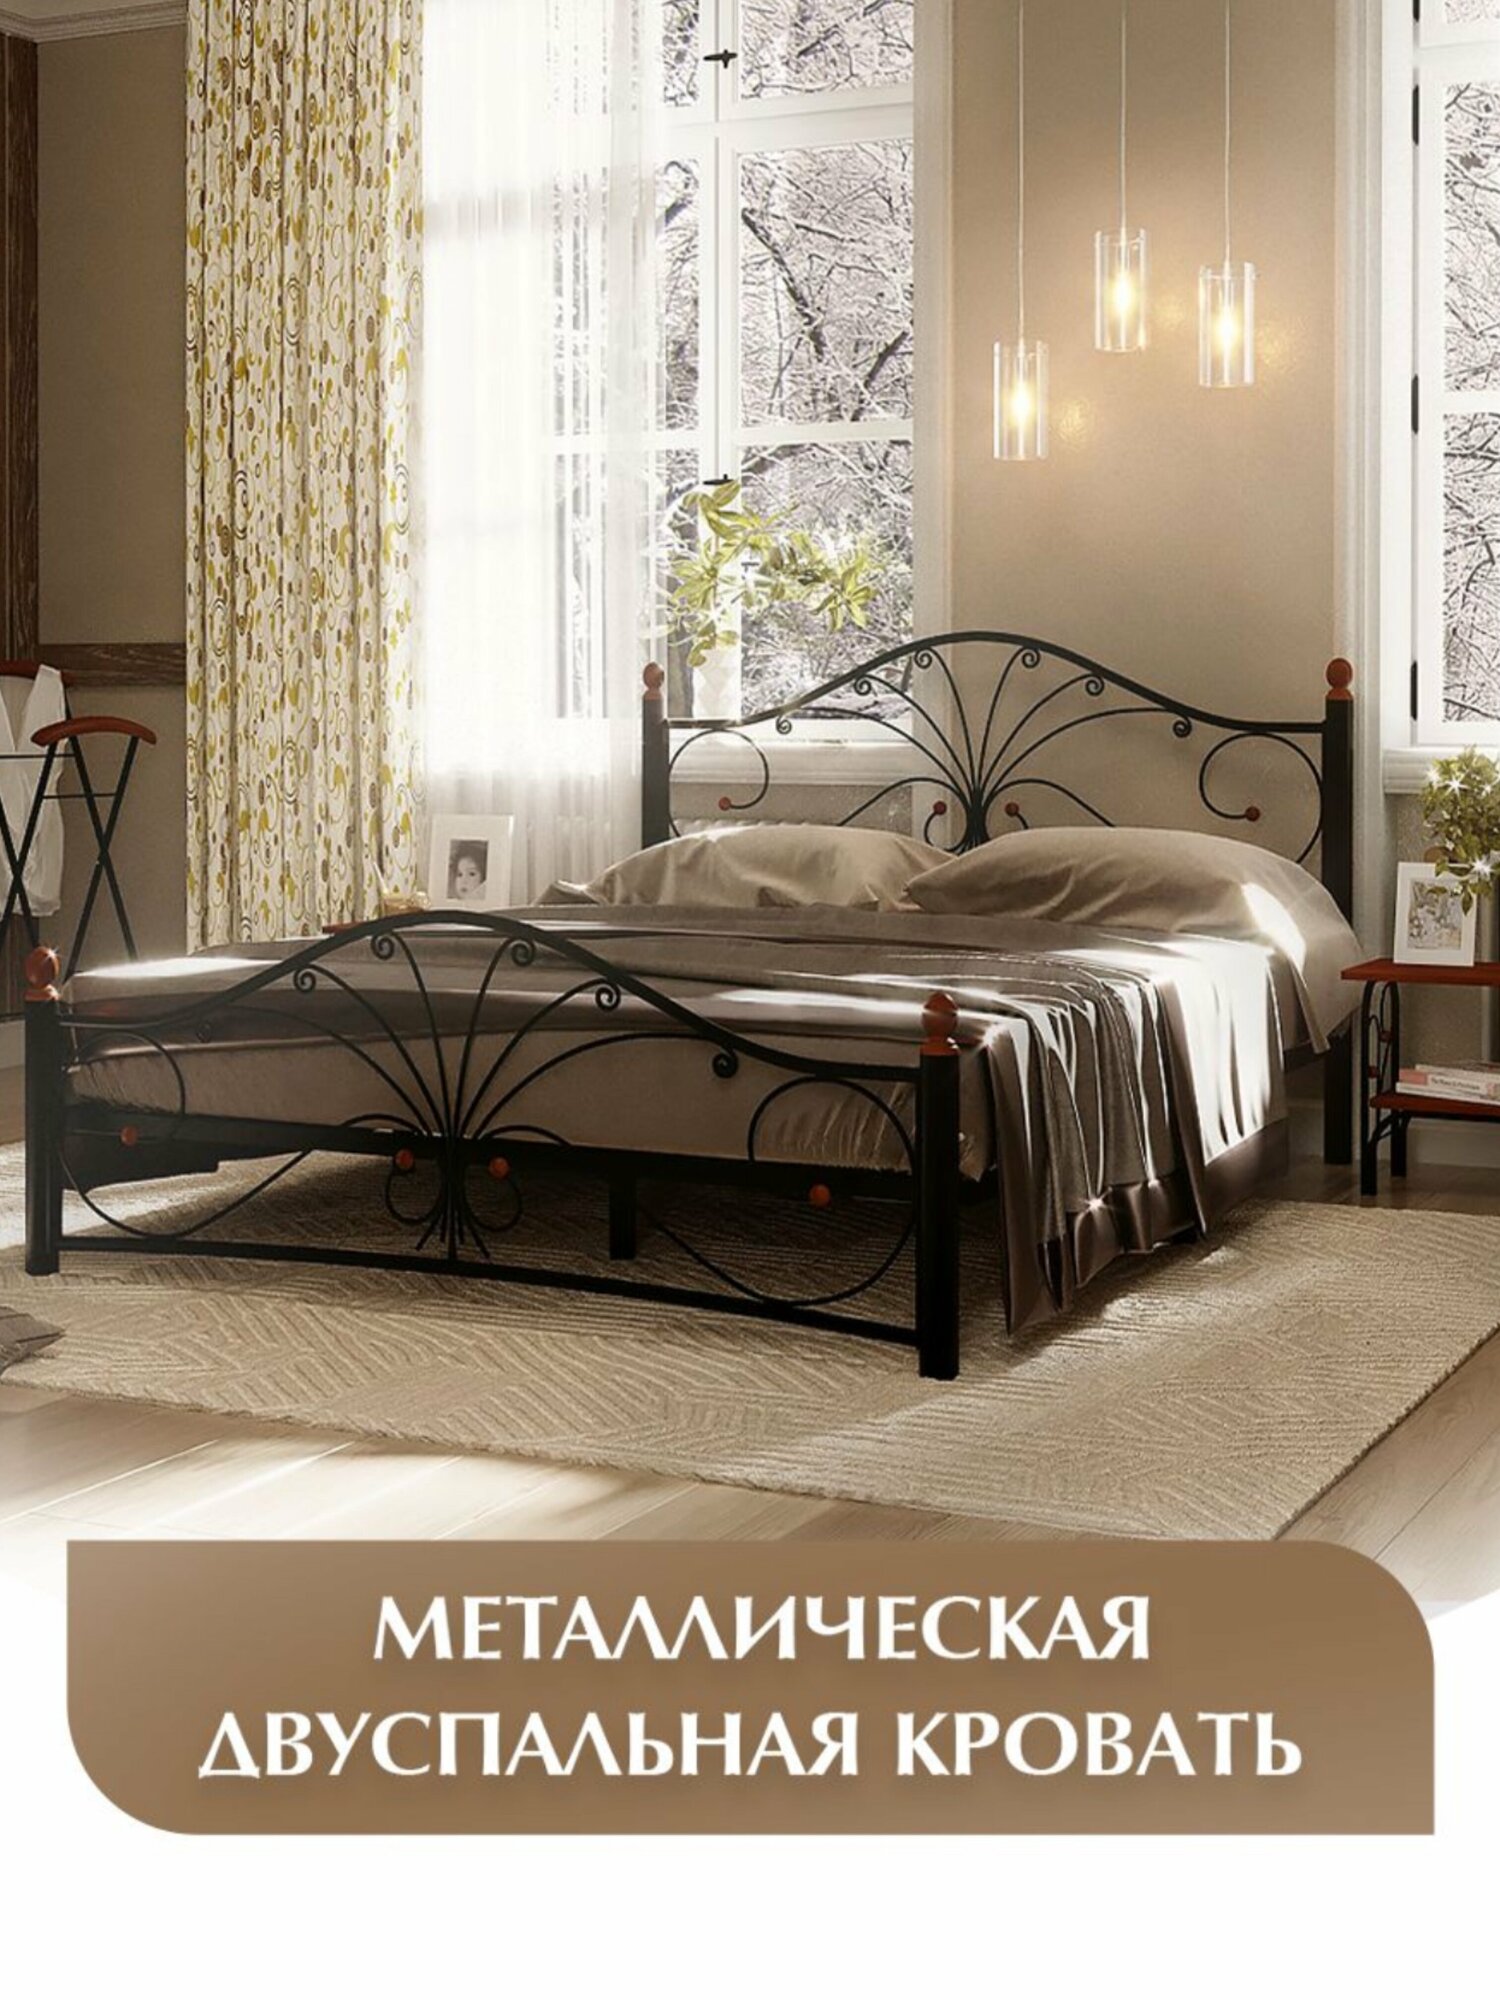 Двуспальная кровать, черная, железная, металлическая, 160х200 см